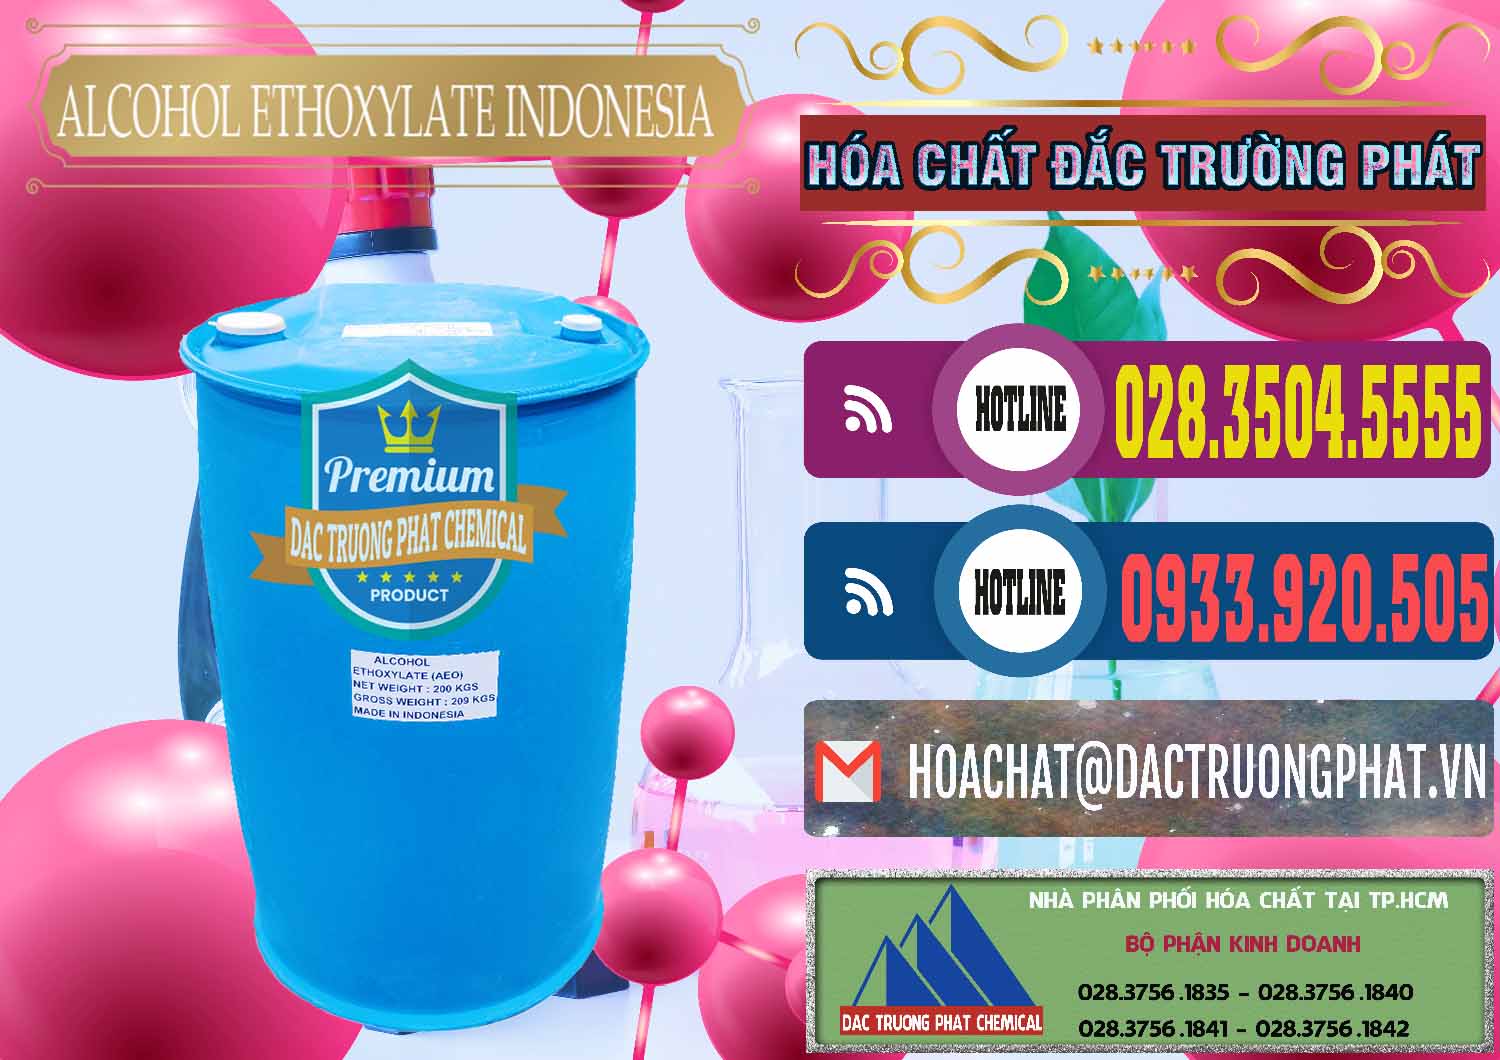 Chuyên bán và cung cấp Alcohol Ethoxylate Indonesia - 0308 - Cung cấp ( phân phối ) hóa chất tại TP.HCM - muabanhoachat.com.vn